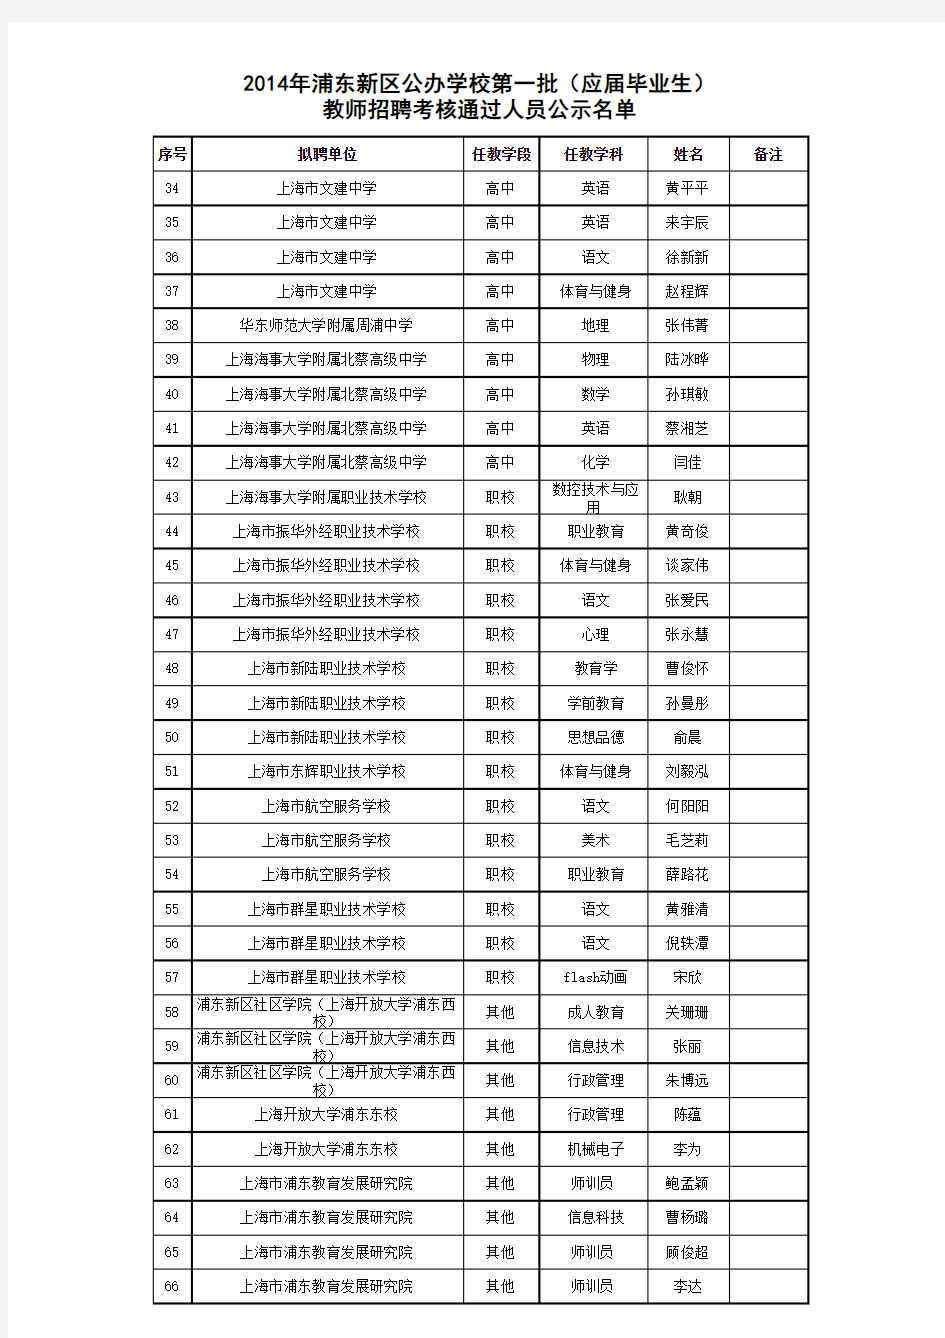 2014年浦东新区公办学校第一批教师招聘考核通过人员名单公示